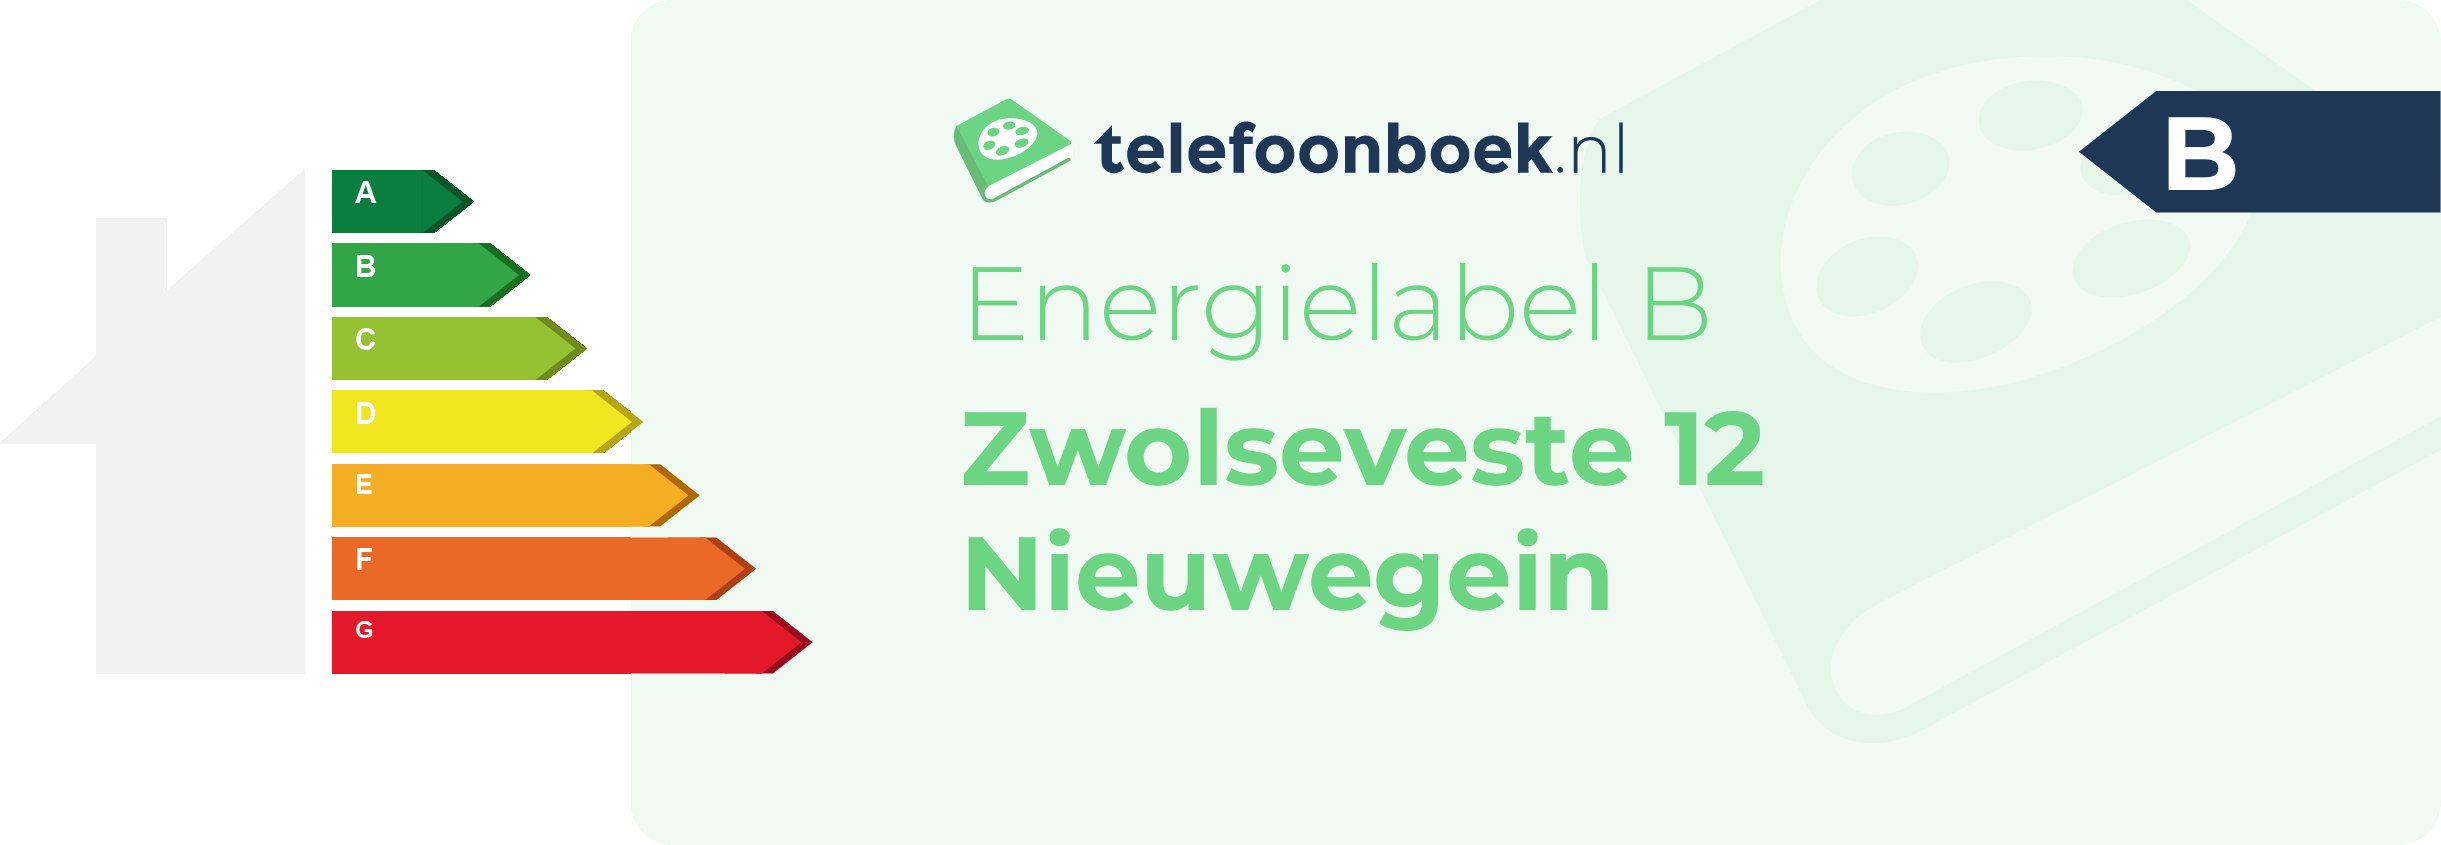 Energielabel Zwolseveste 12 Nieuwegein